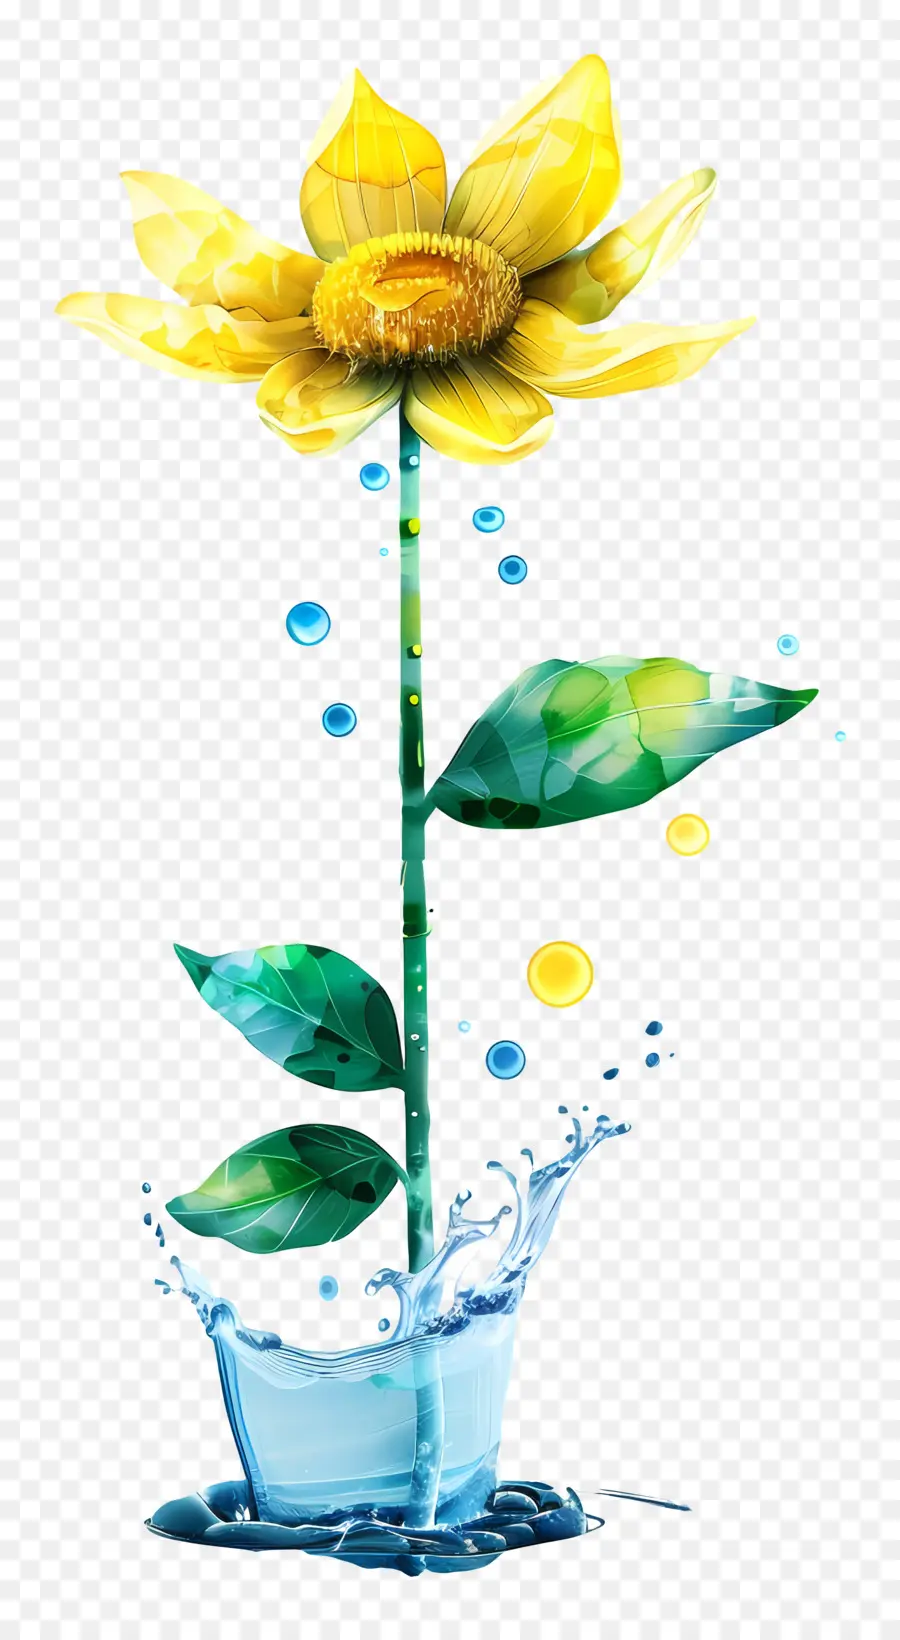 girasole - Girasole in fiore in vaso pieno d'acqua